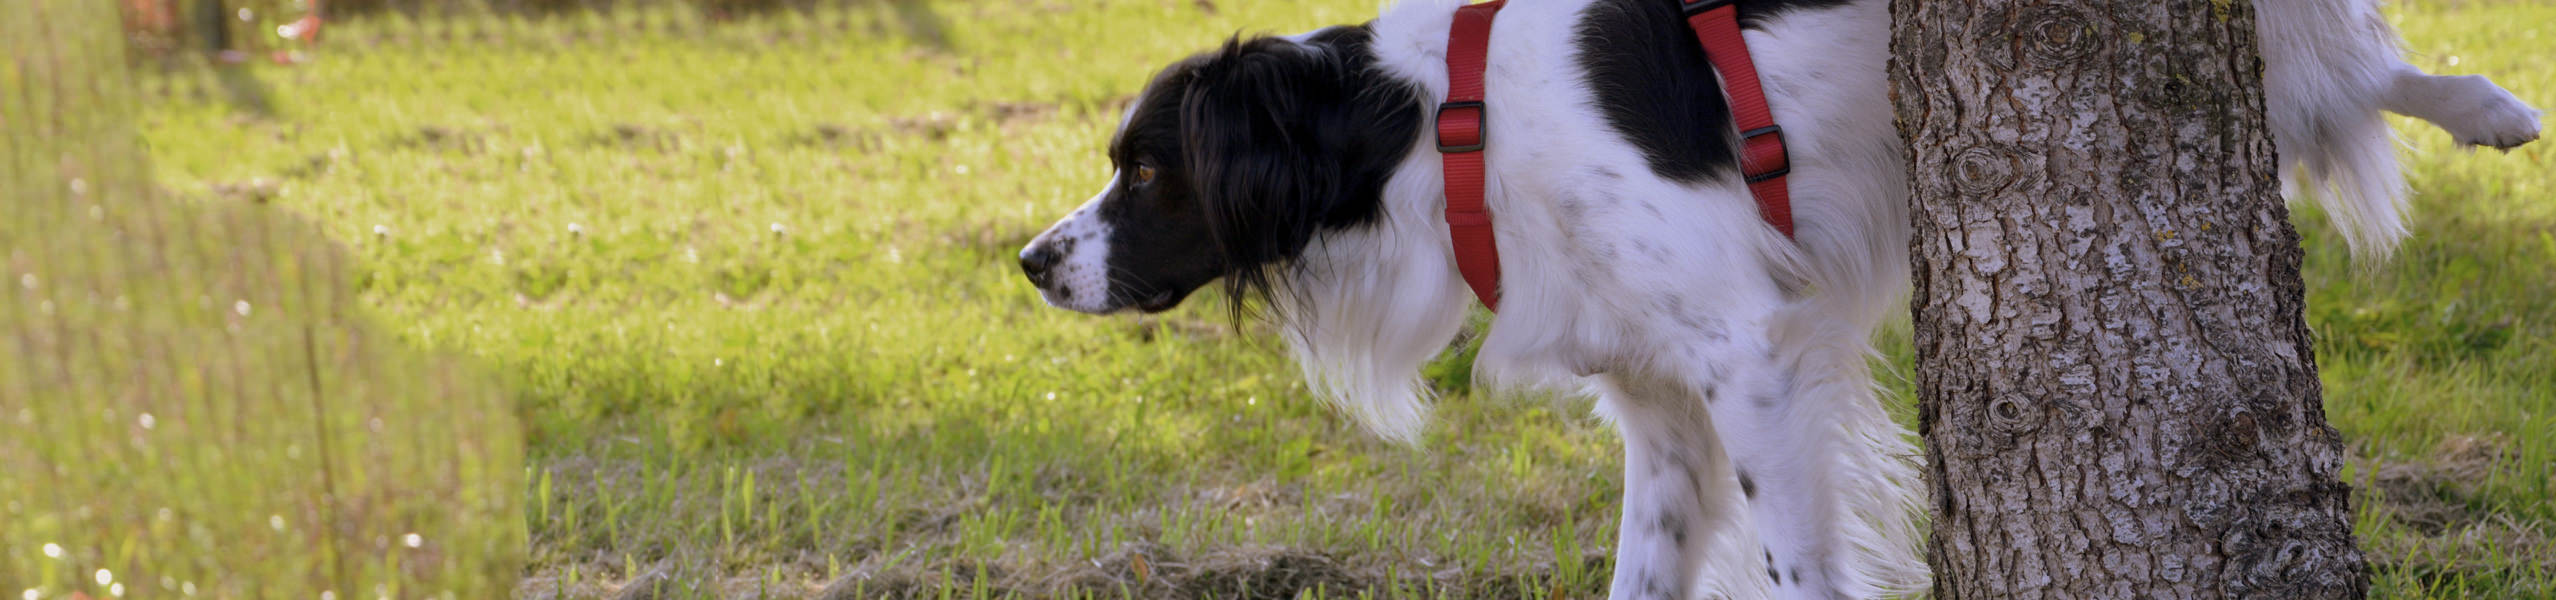 Hund mit Blasenentzündung: wie wir den Vierbeiner behandeln können